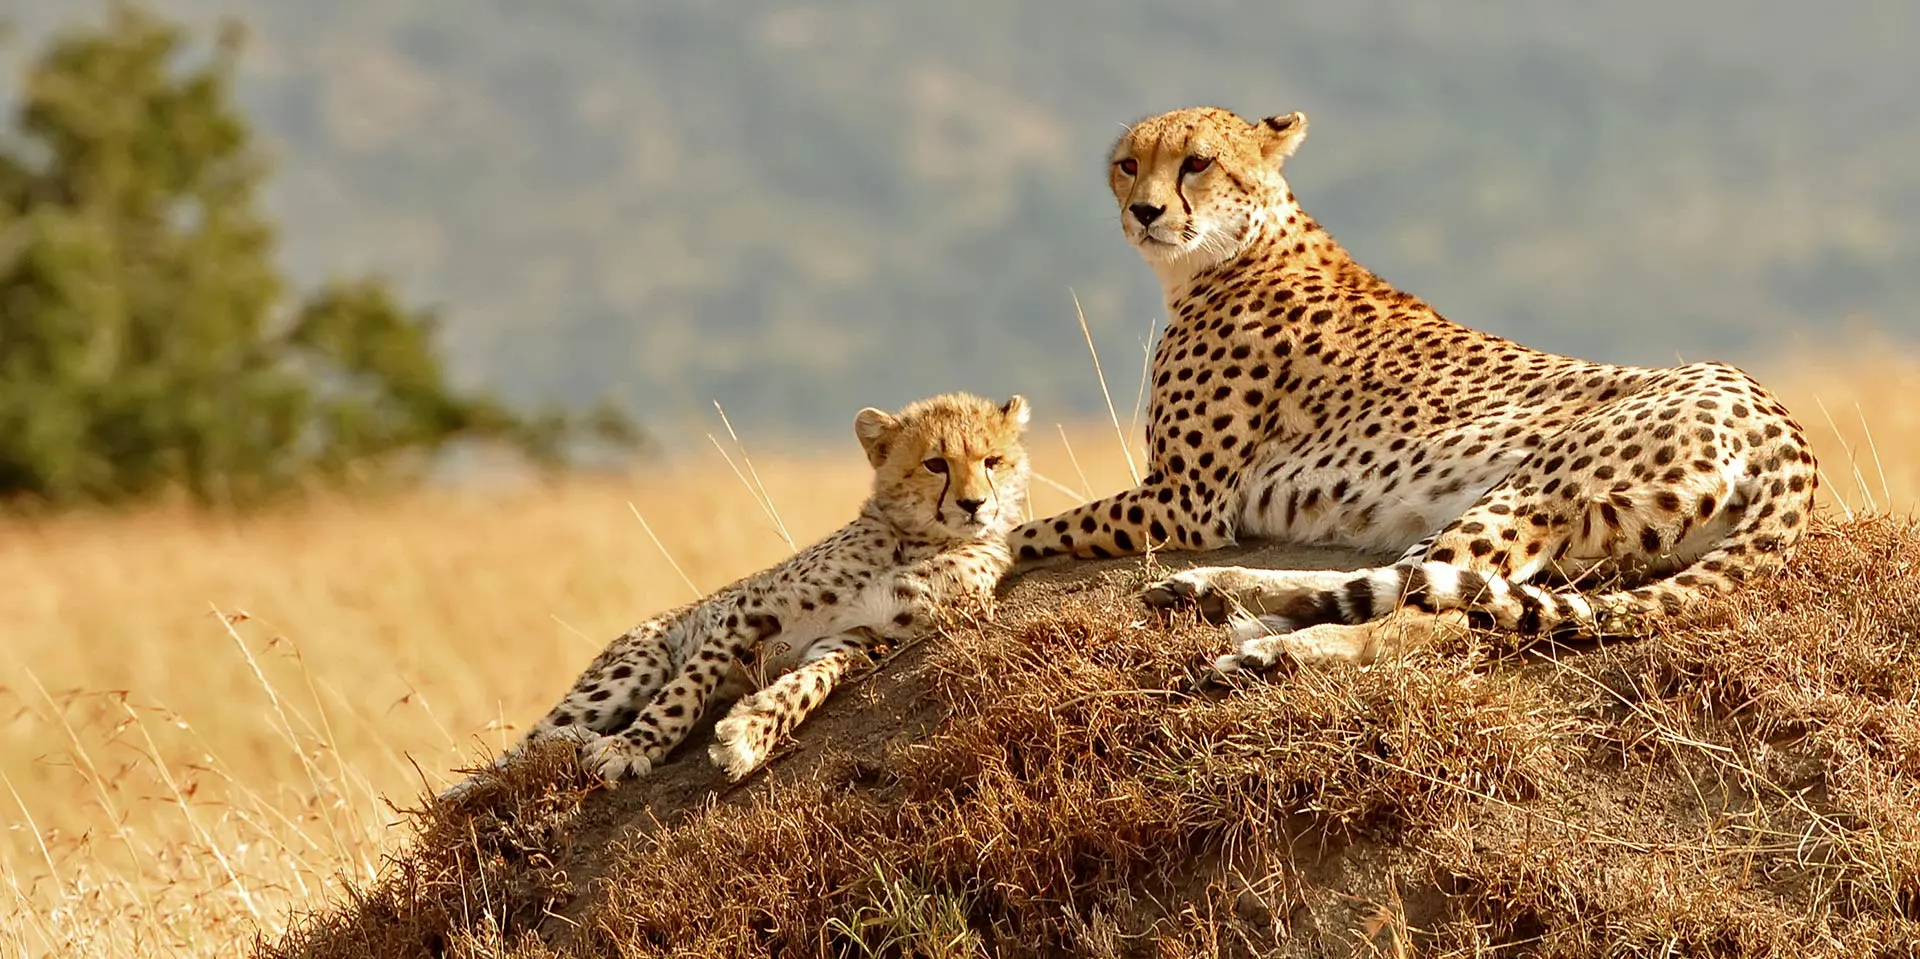 Cheetah and cub in Kenya photographed on Safari Holiday